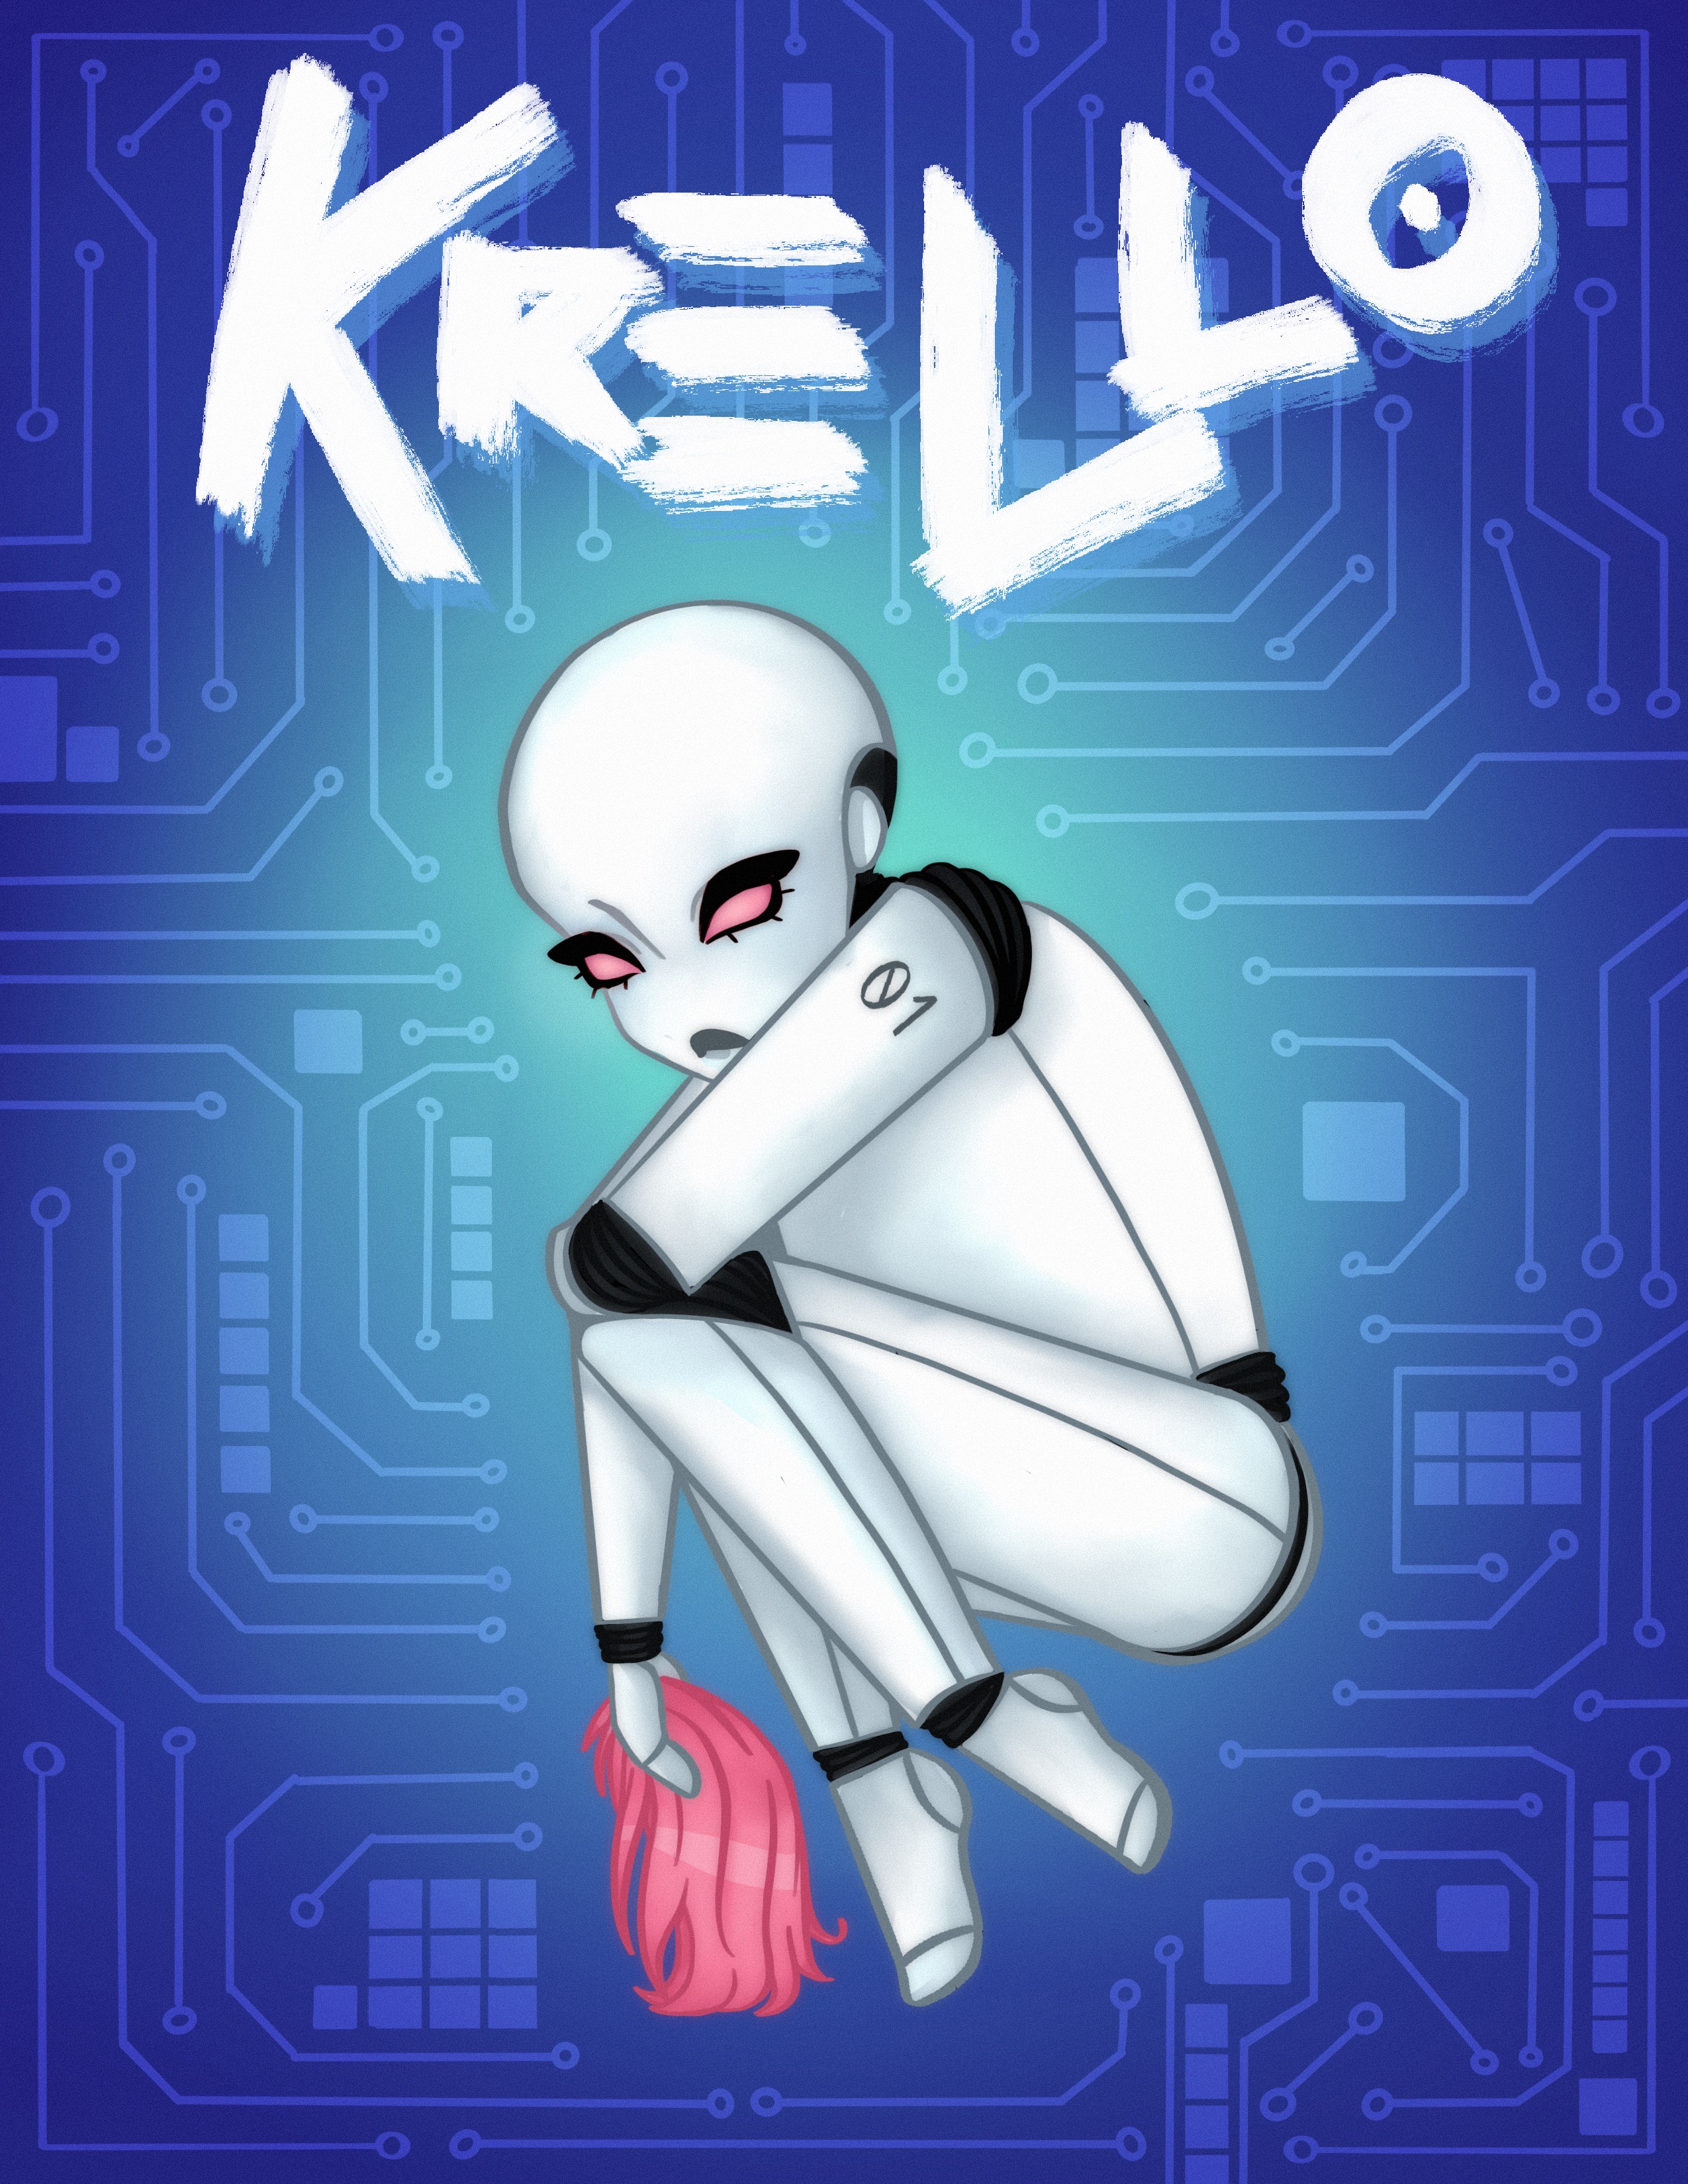 KRELLO Issue 004